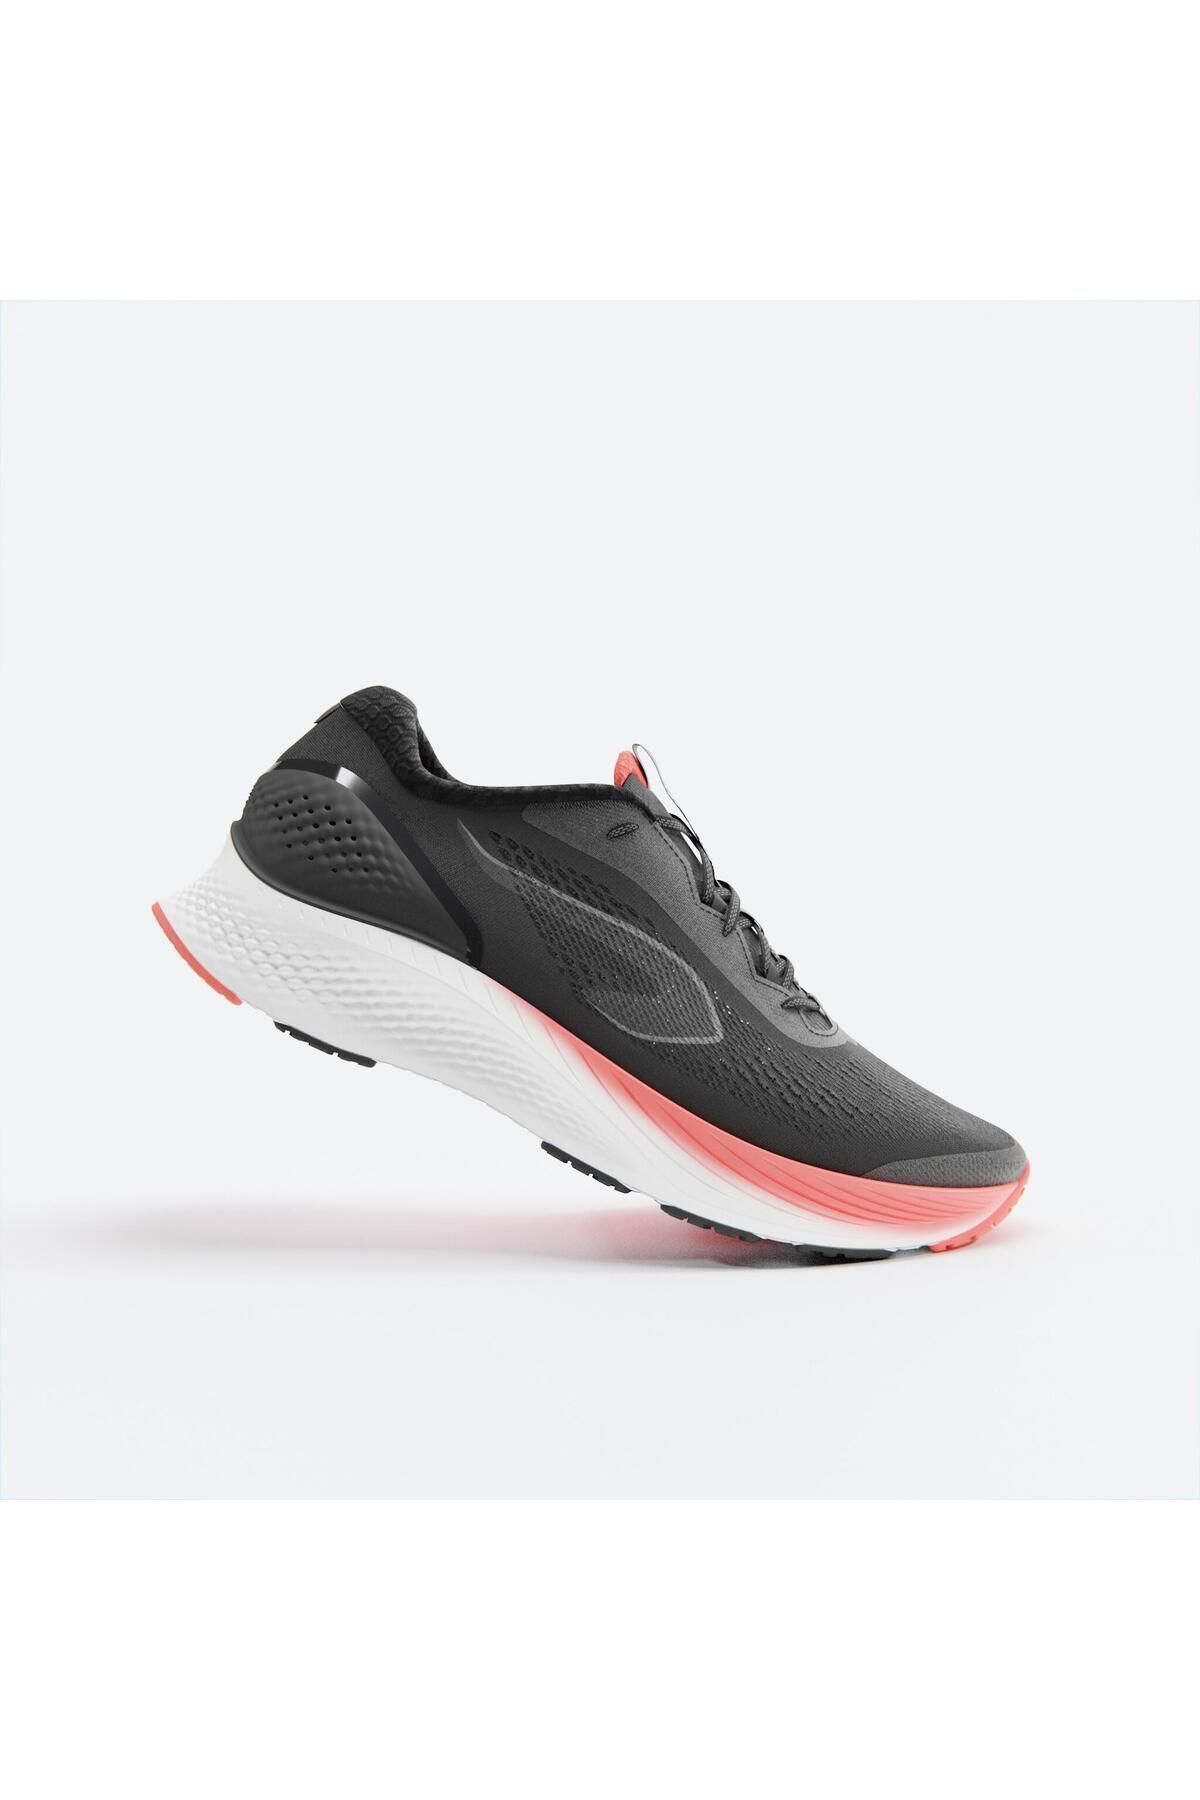 Decathlon Kadın Koşu Ayakkabısı - Siyah - Kiprun K2500 2